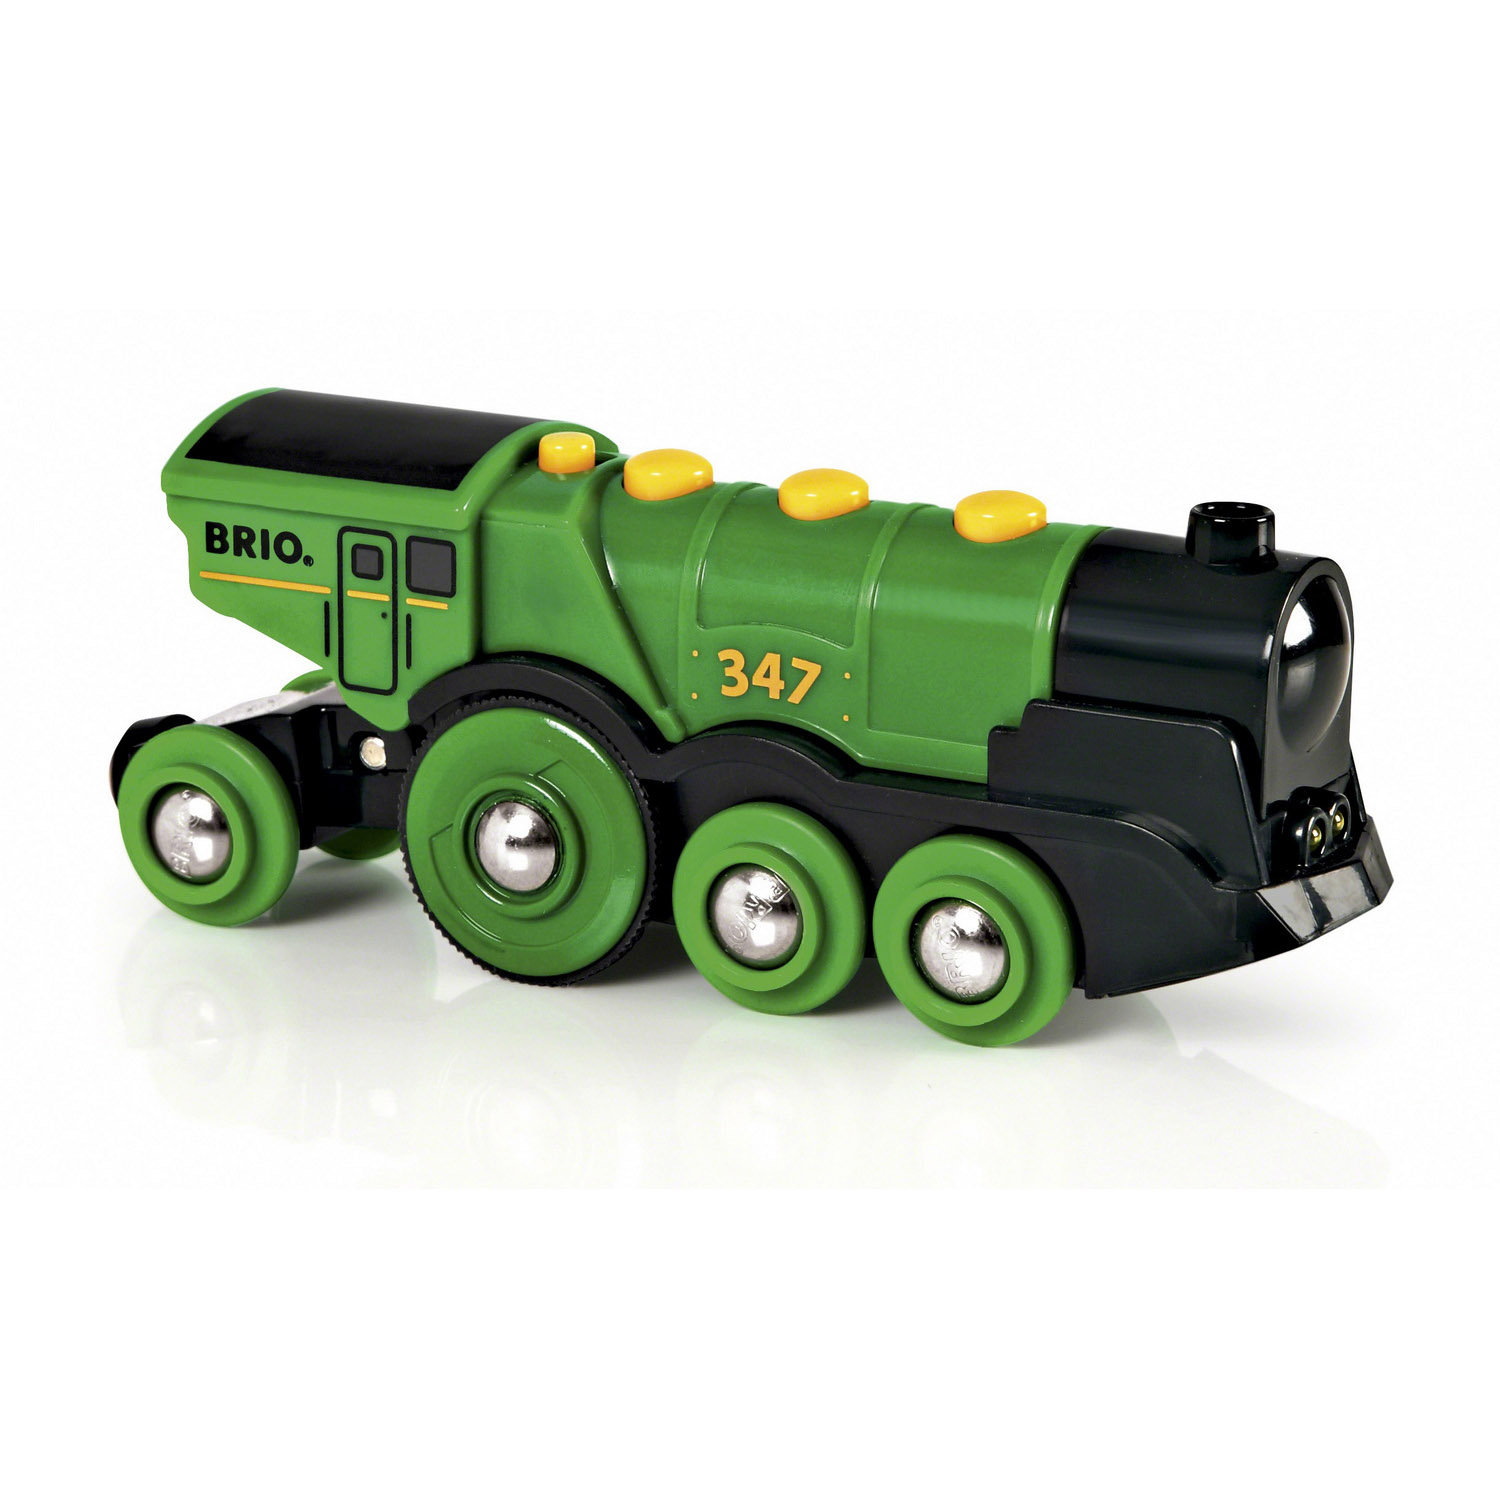 Локомотив BRIO поезд зеленый со световыми и звуковыми эффектами - фото 1